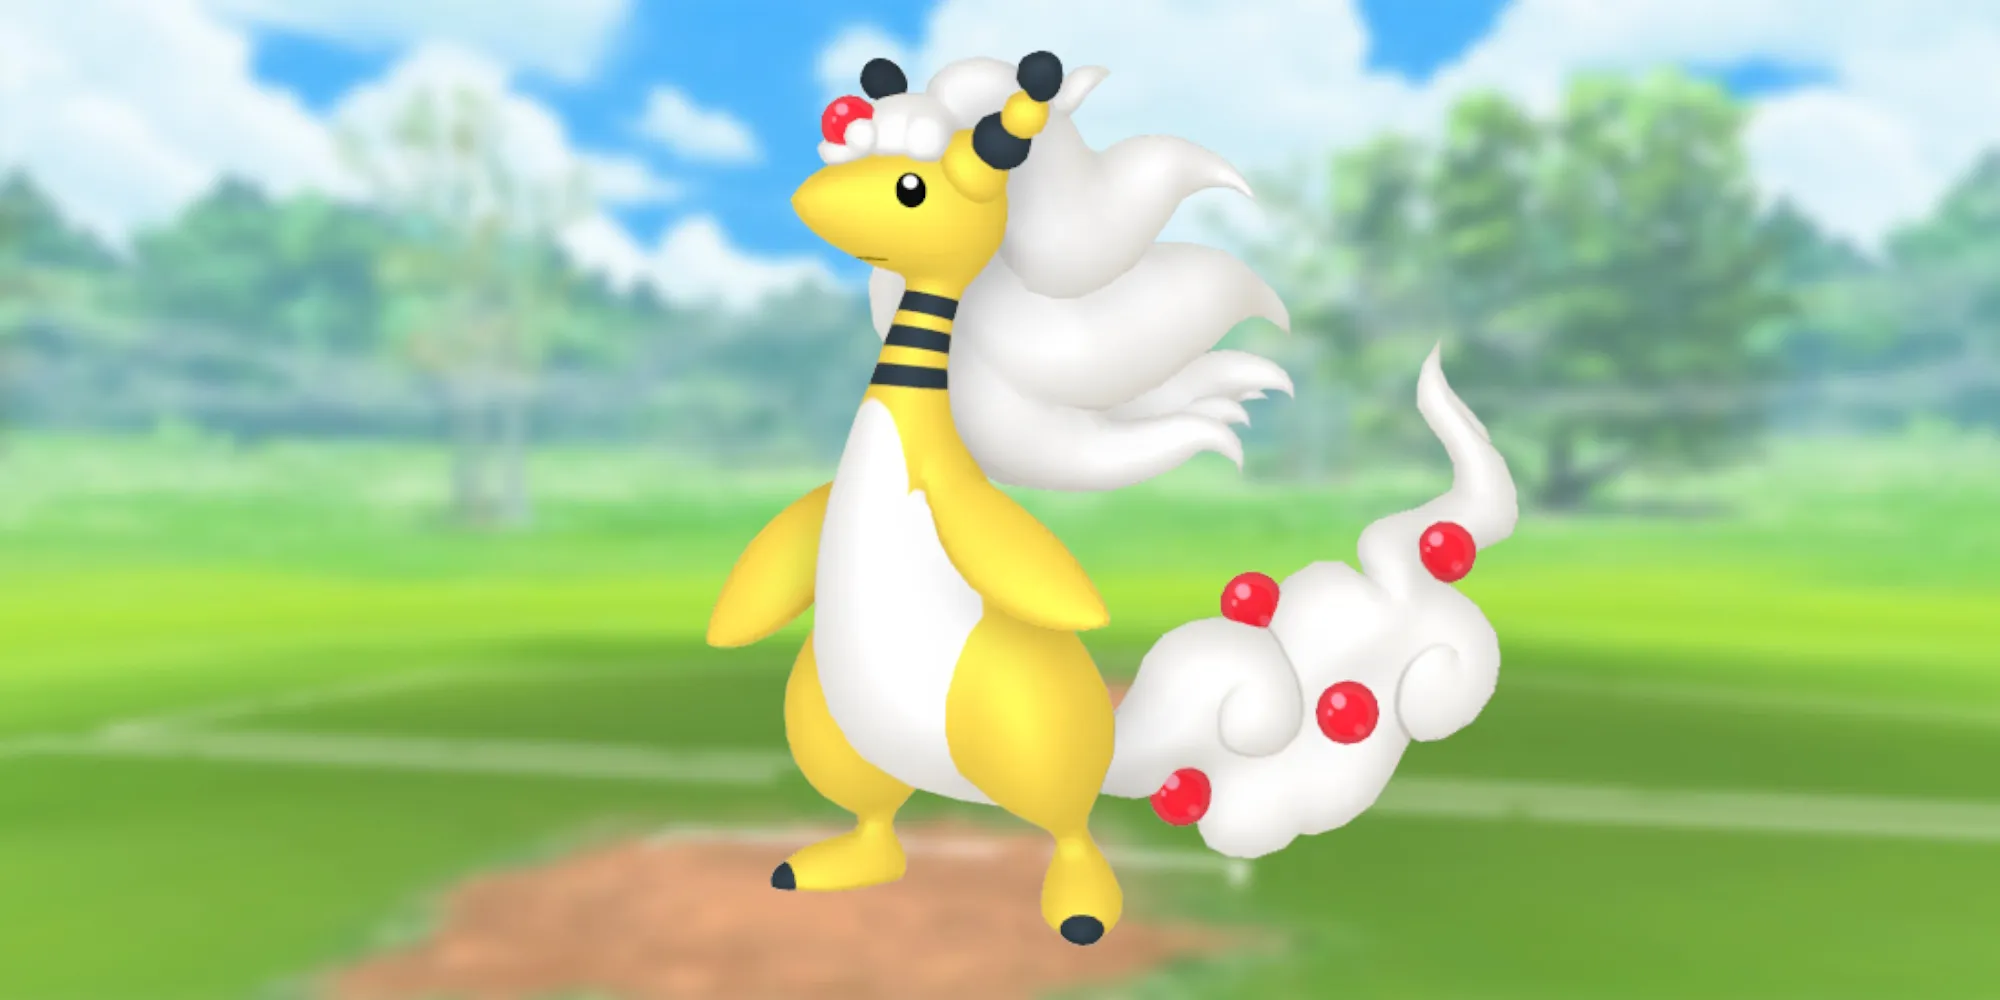 Изображение Мега-Амфароса с полем боя Pokemon Go в качестве фона